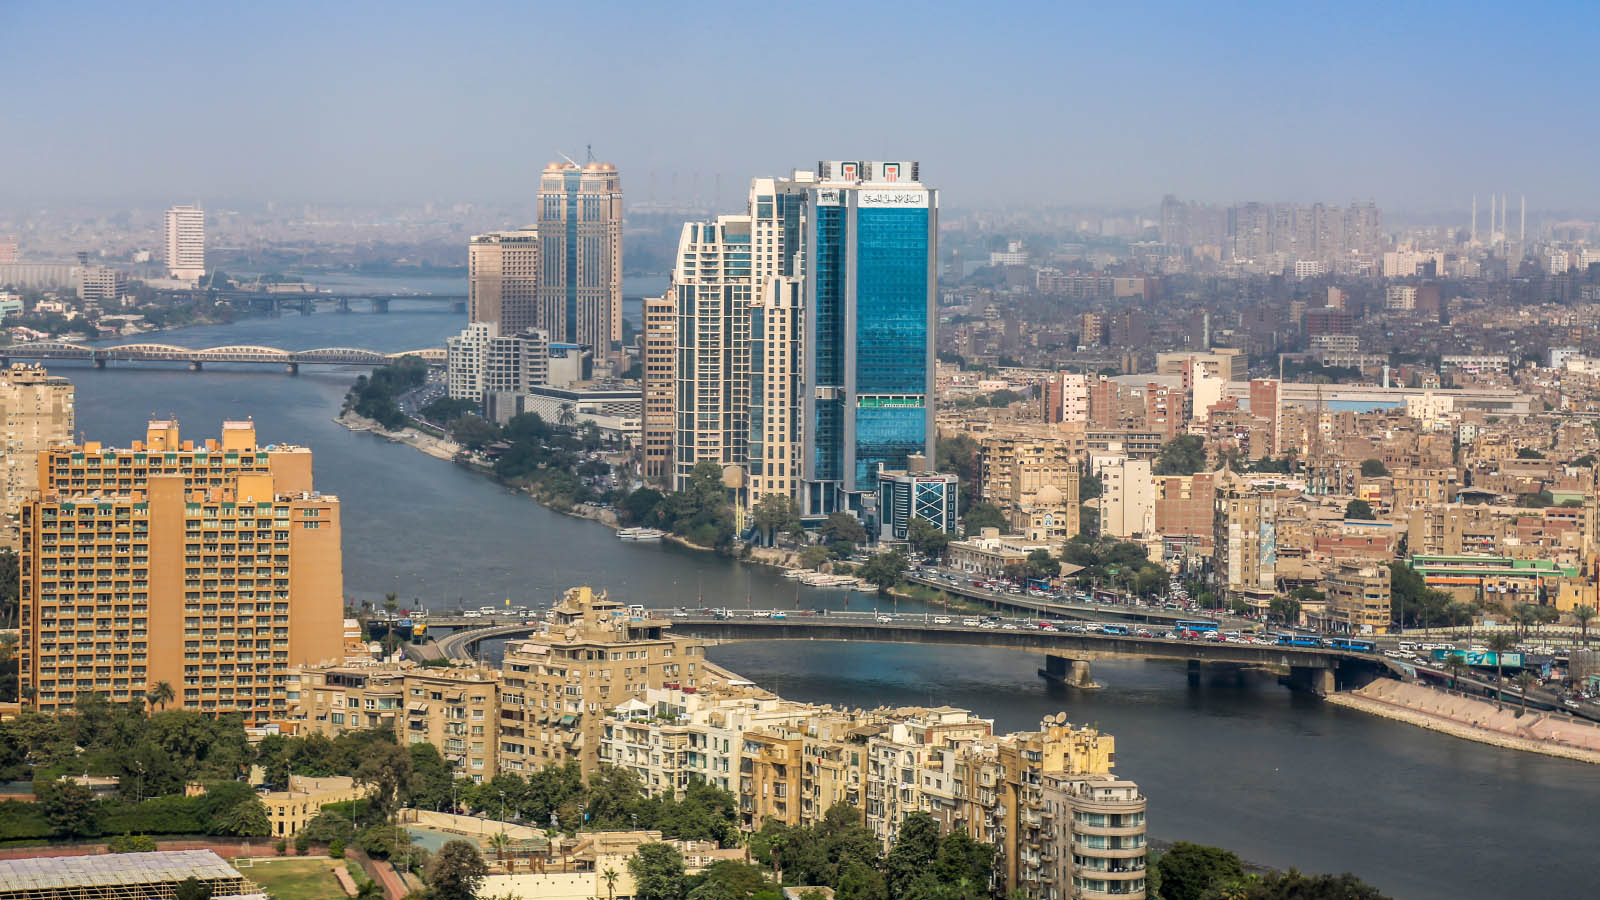 נהר הנילוס עובר בקהיר. (צילום: George Nazmi Bebawi / Shutterstock.com)